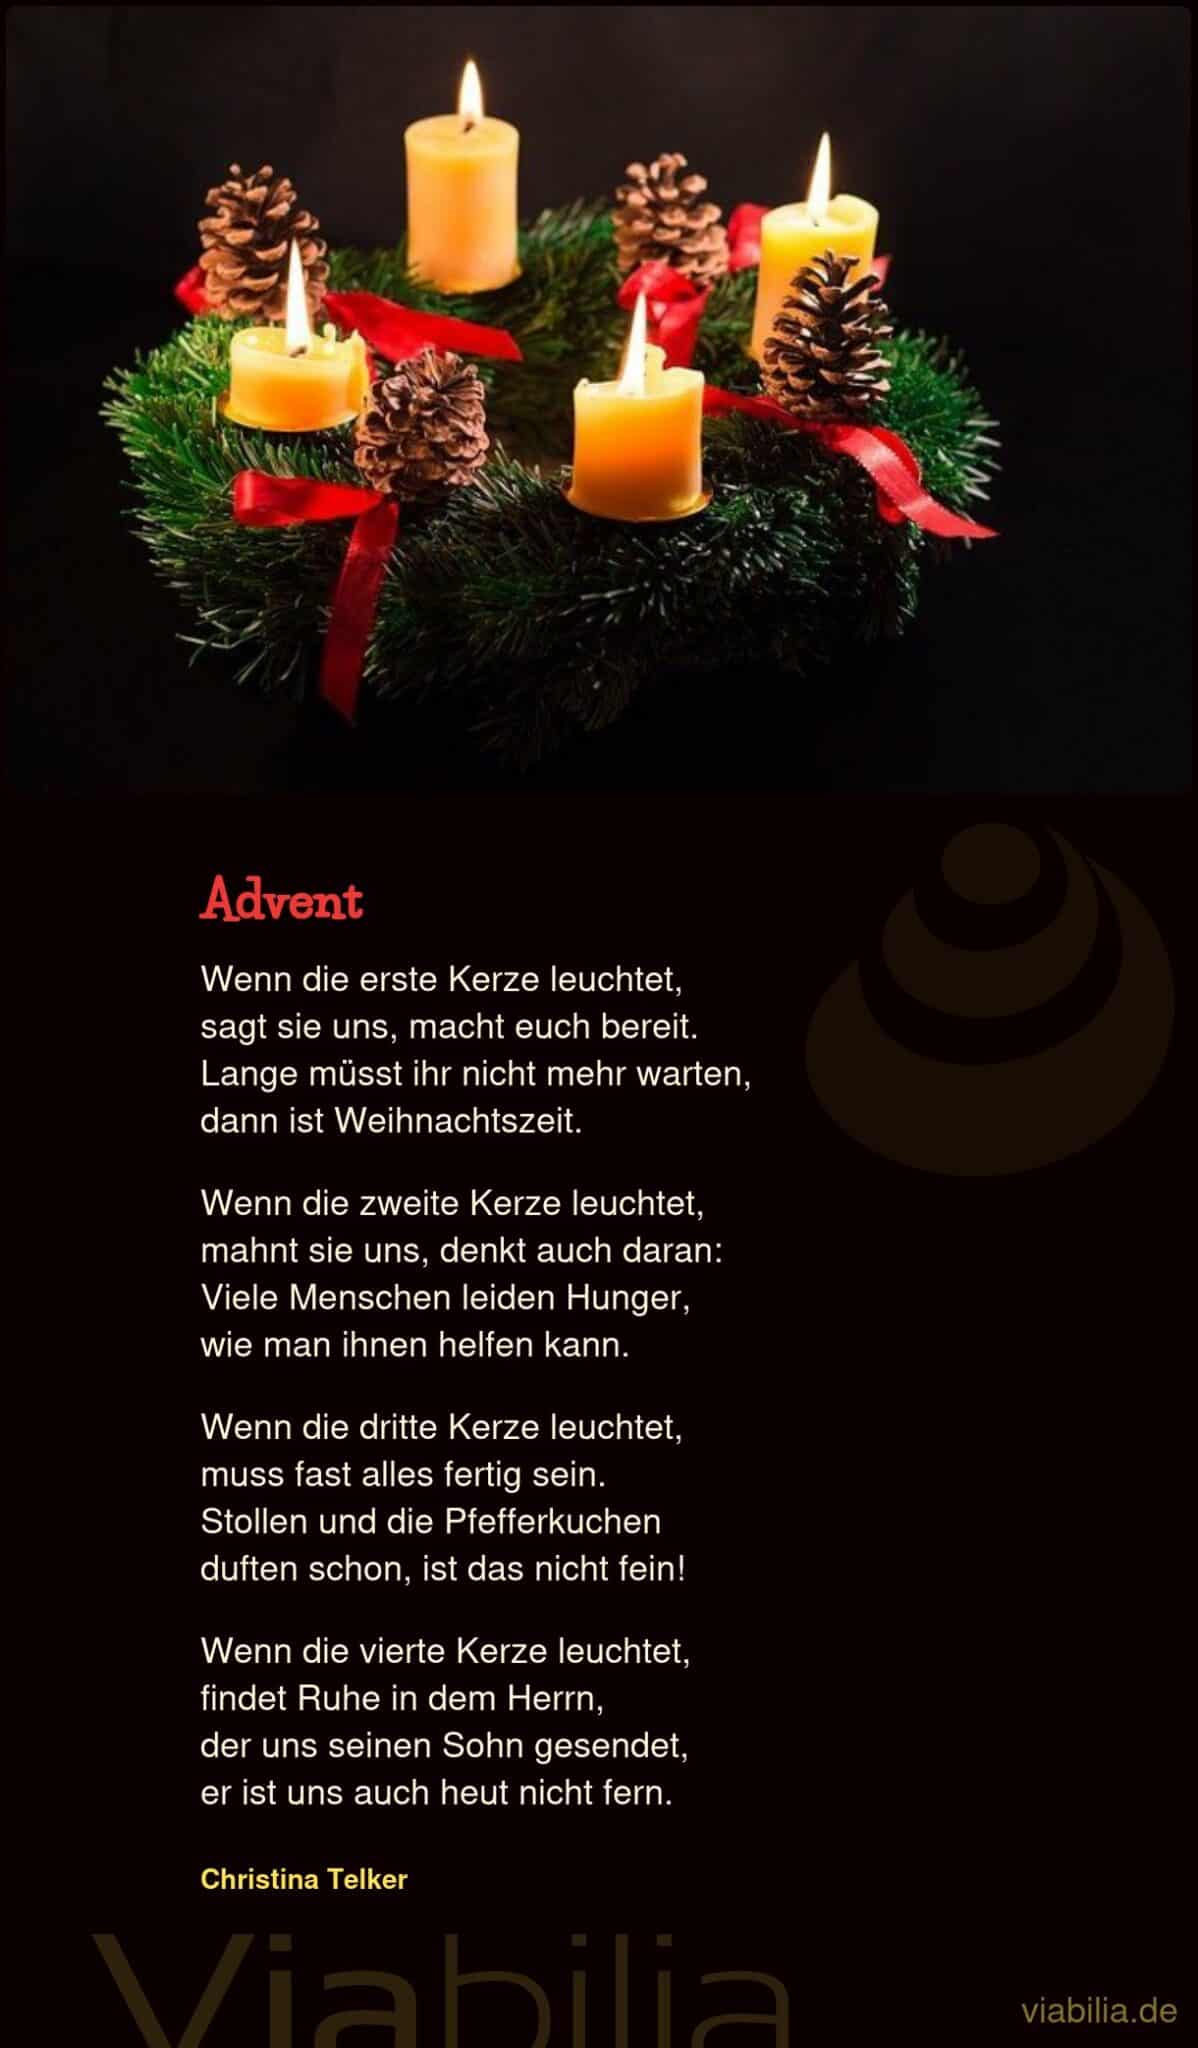 Weihnachtsgedicht über die vier Kerzen im Advent